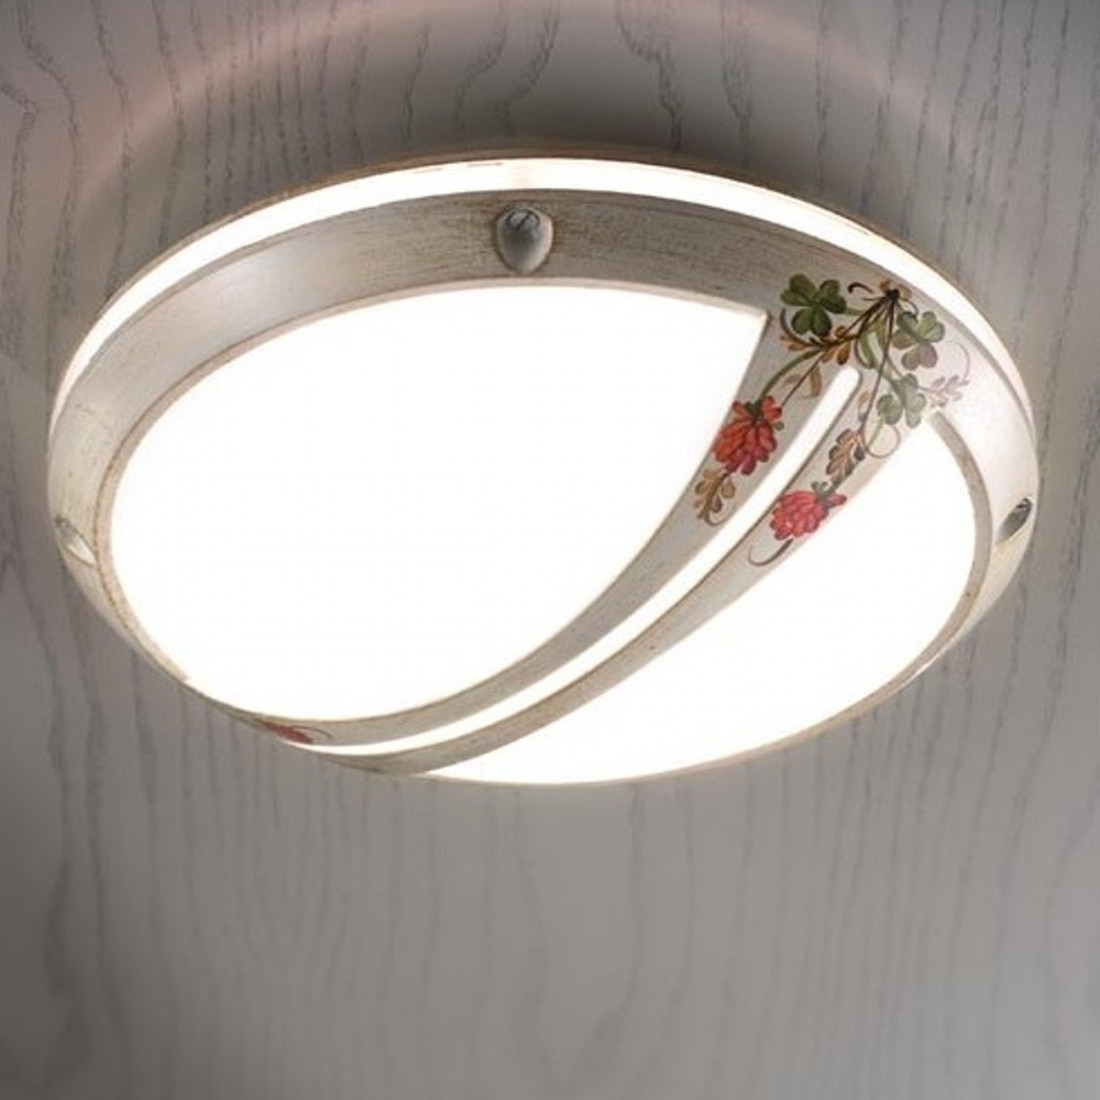 Plafoniera FE-BRINDISI A551 PL E27 LED 28CM alluminio decorato artigianale lampada soffitto classica tonda esterno IP44